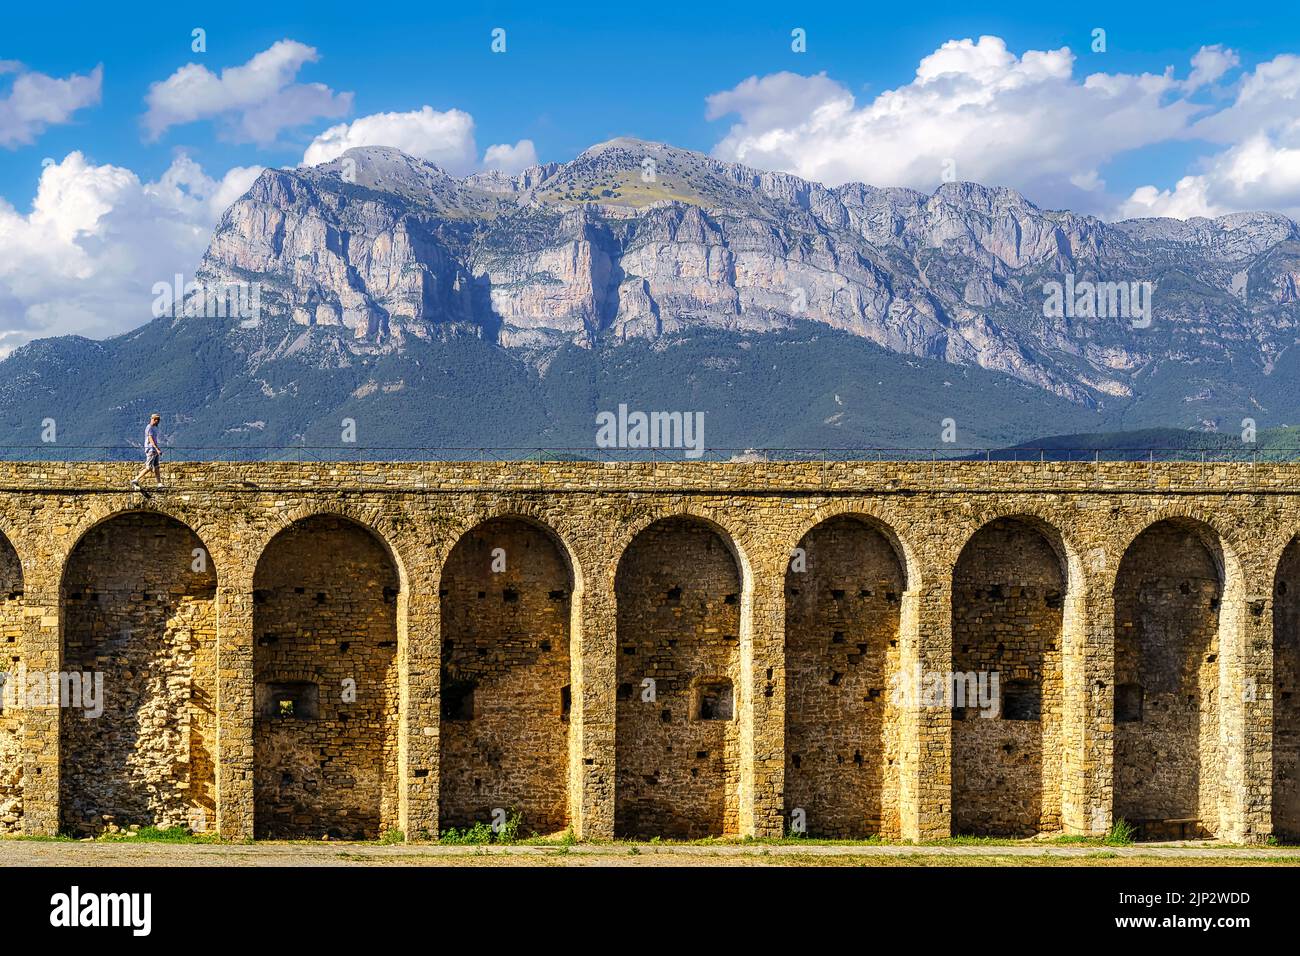 Medievale archi in pietra acquedotto fortezza con la montagna dei Pirenei sullo sfondo e le nuvole sopra il cielo blu. Ainsa, Spagna, Foto Stock